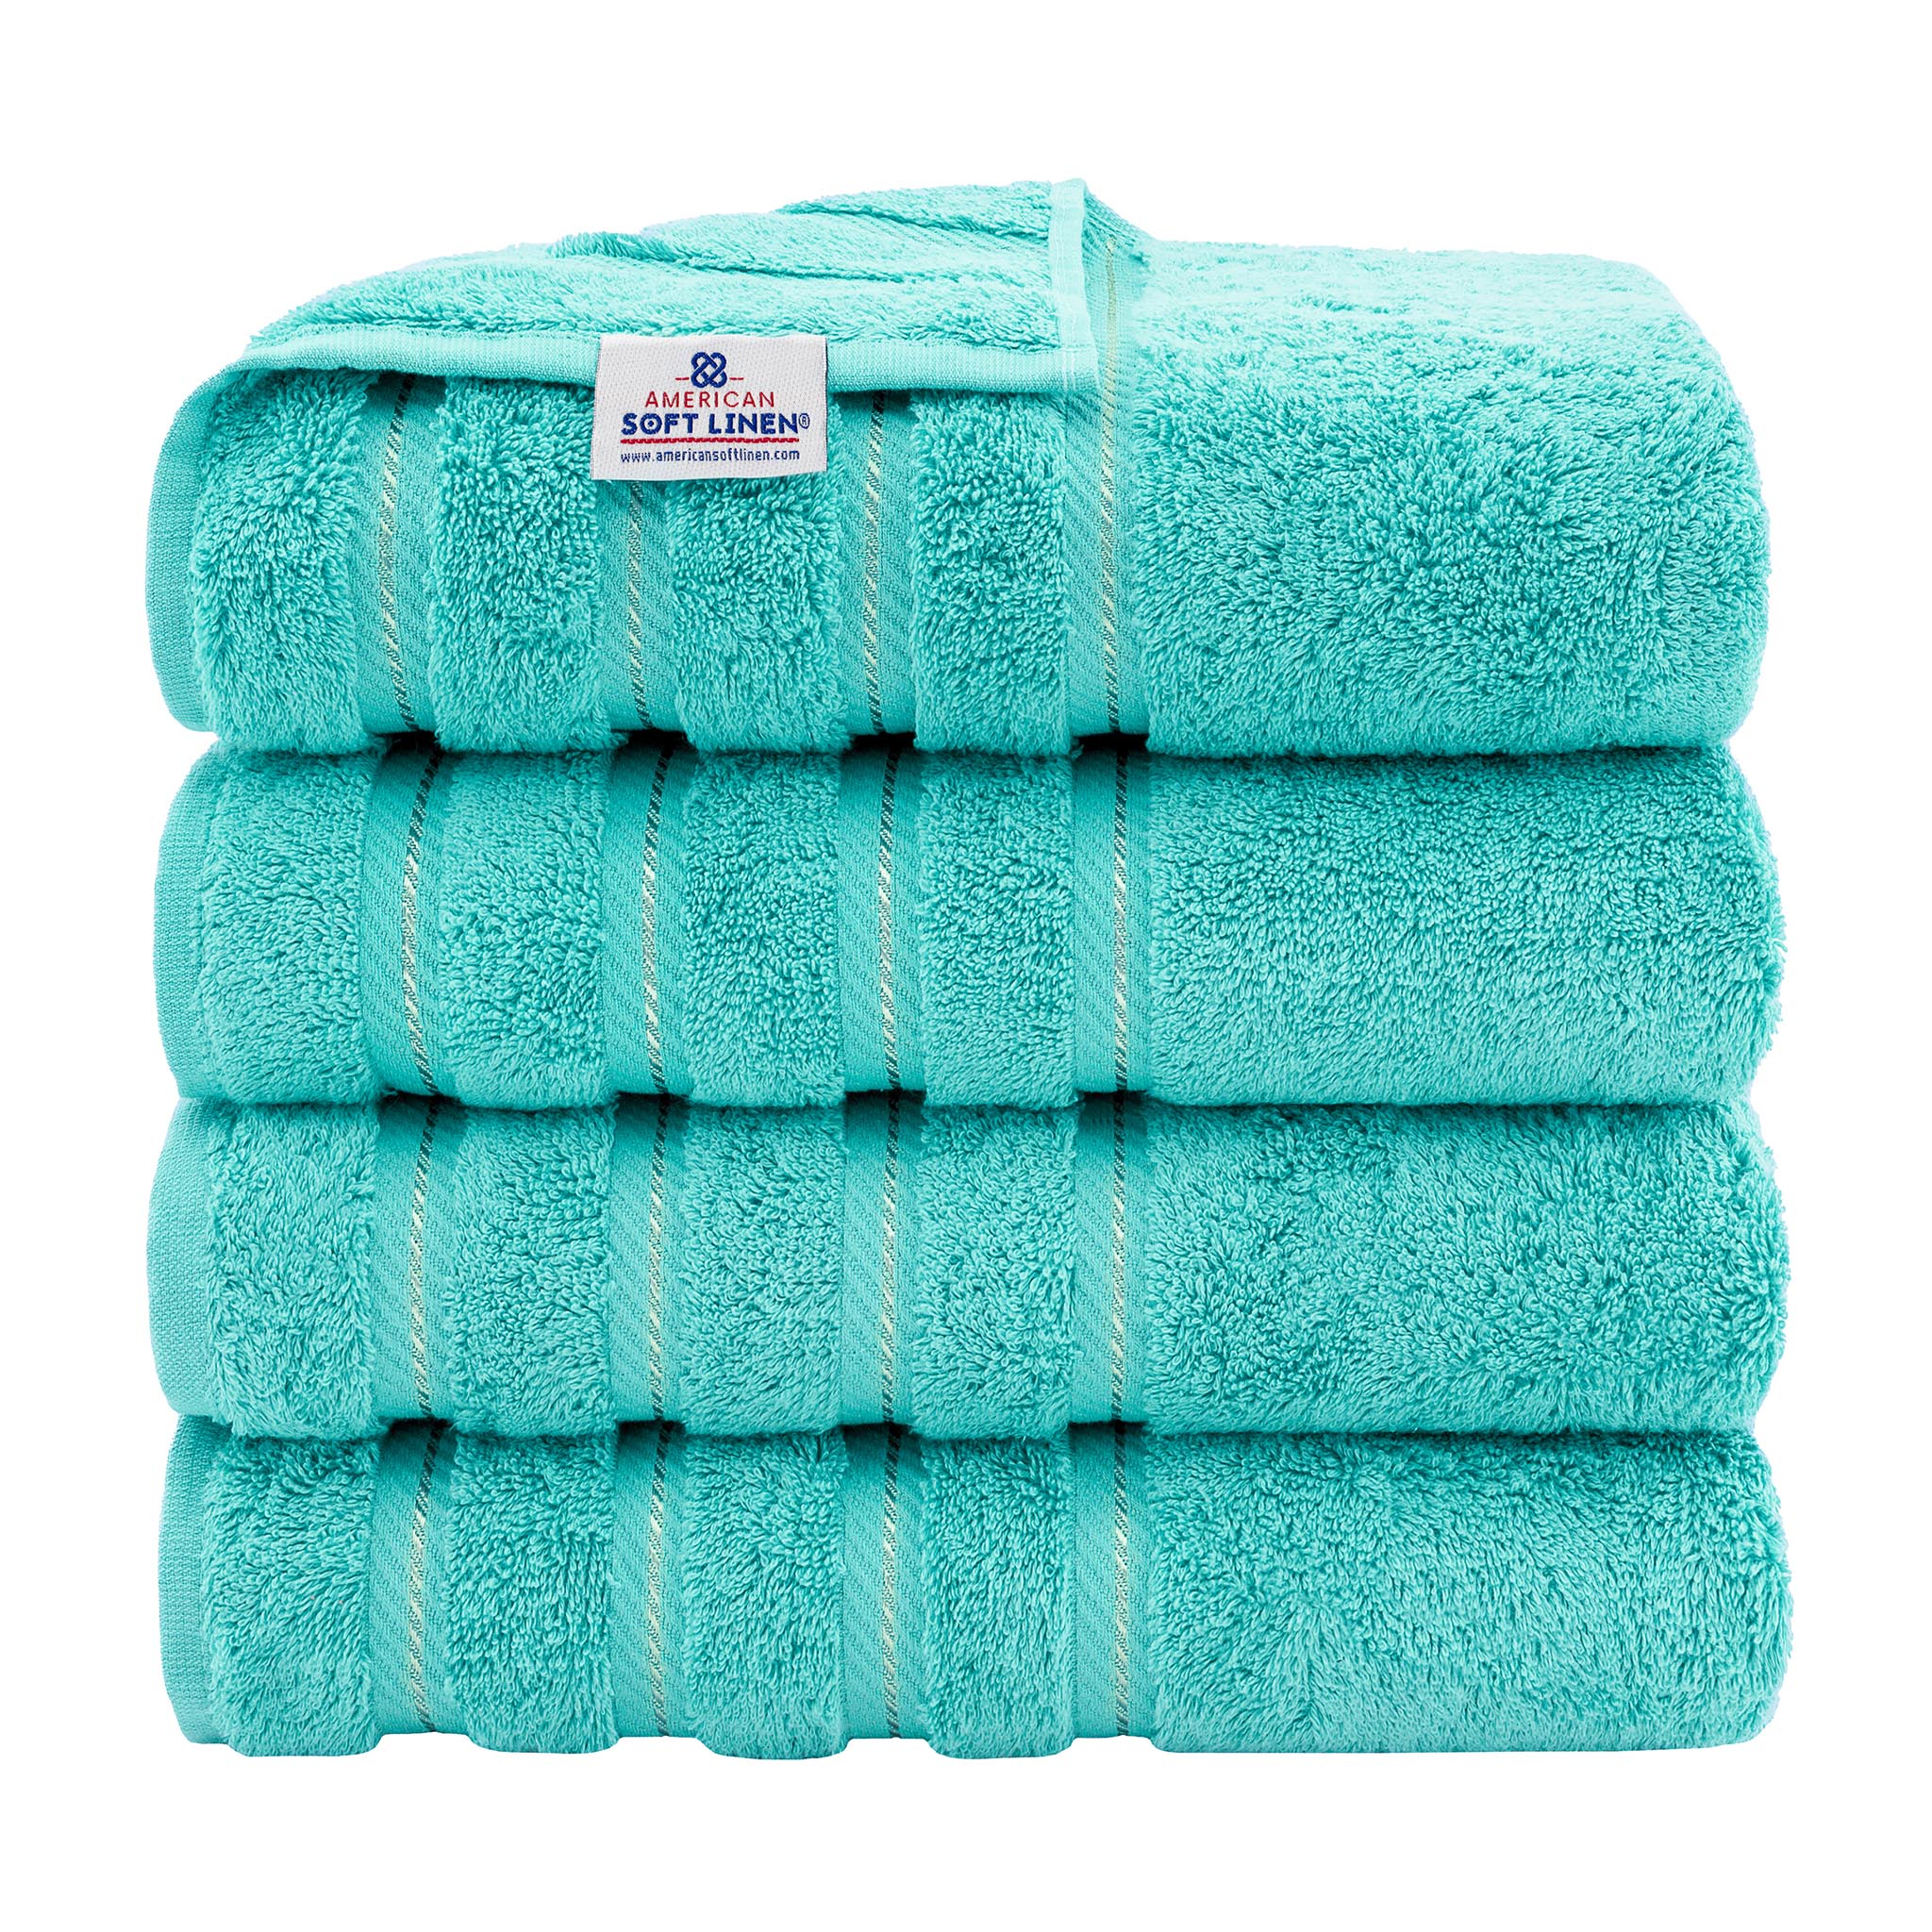 American Soft Linen 100% Turkish Cotton 4 Pack Bath Towel Set Wholesale turquoise-blue-1